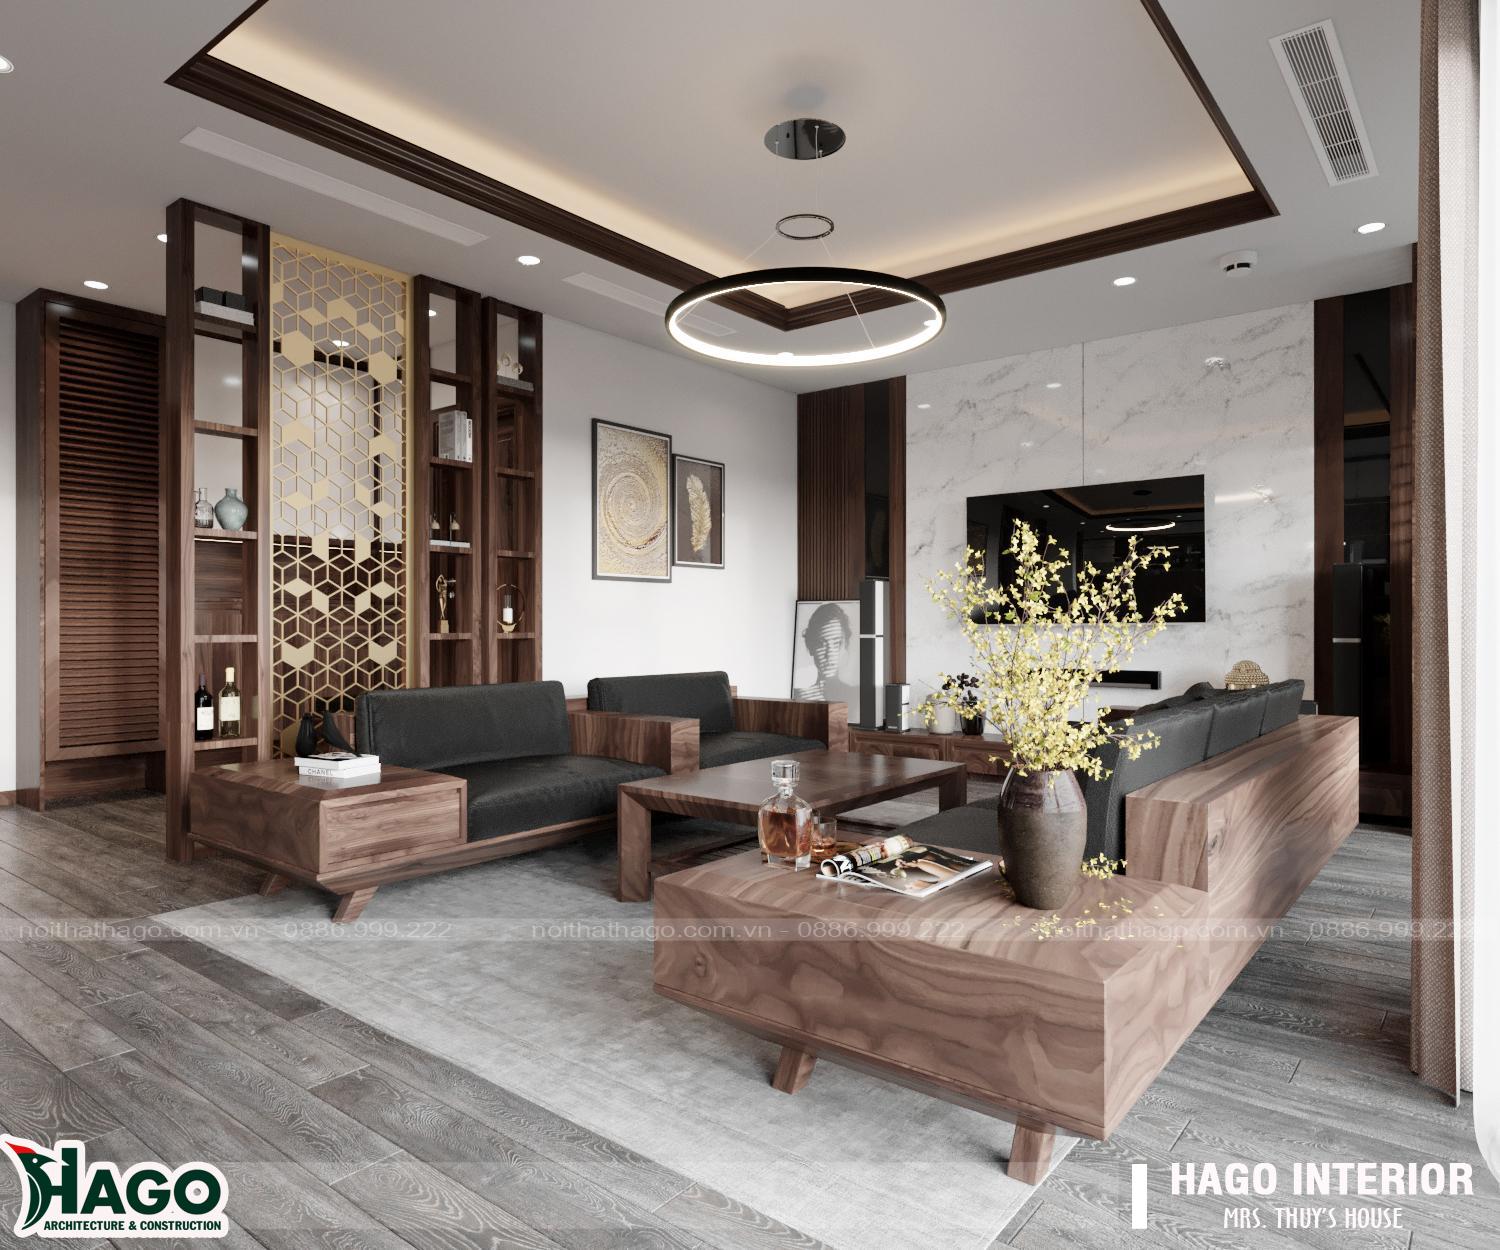 Sofa gỗ sồi thiết kế đơn giản hiện đại đầy tinh tế trong nội thất chung cư